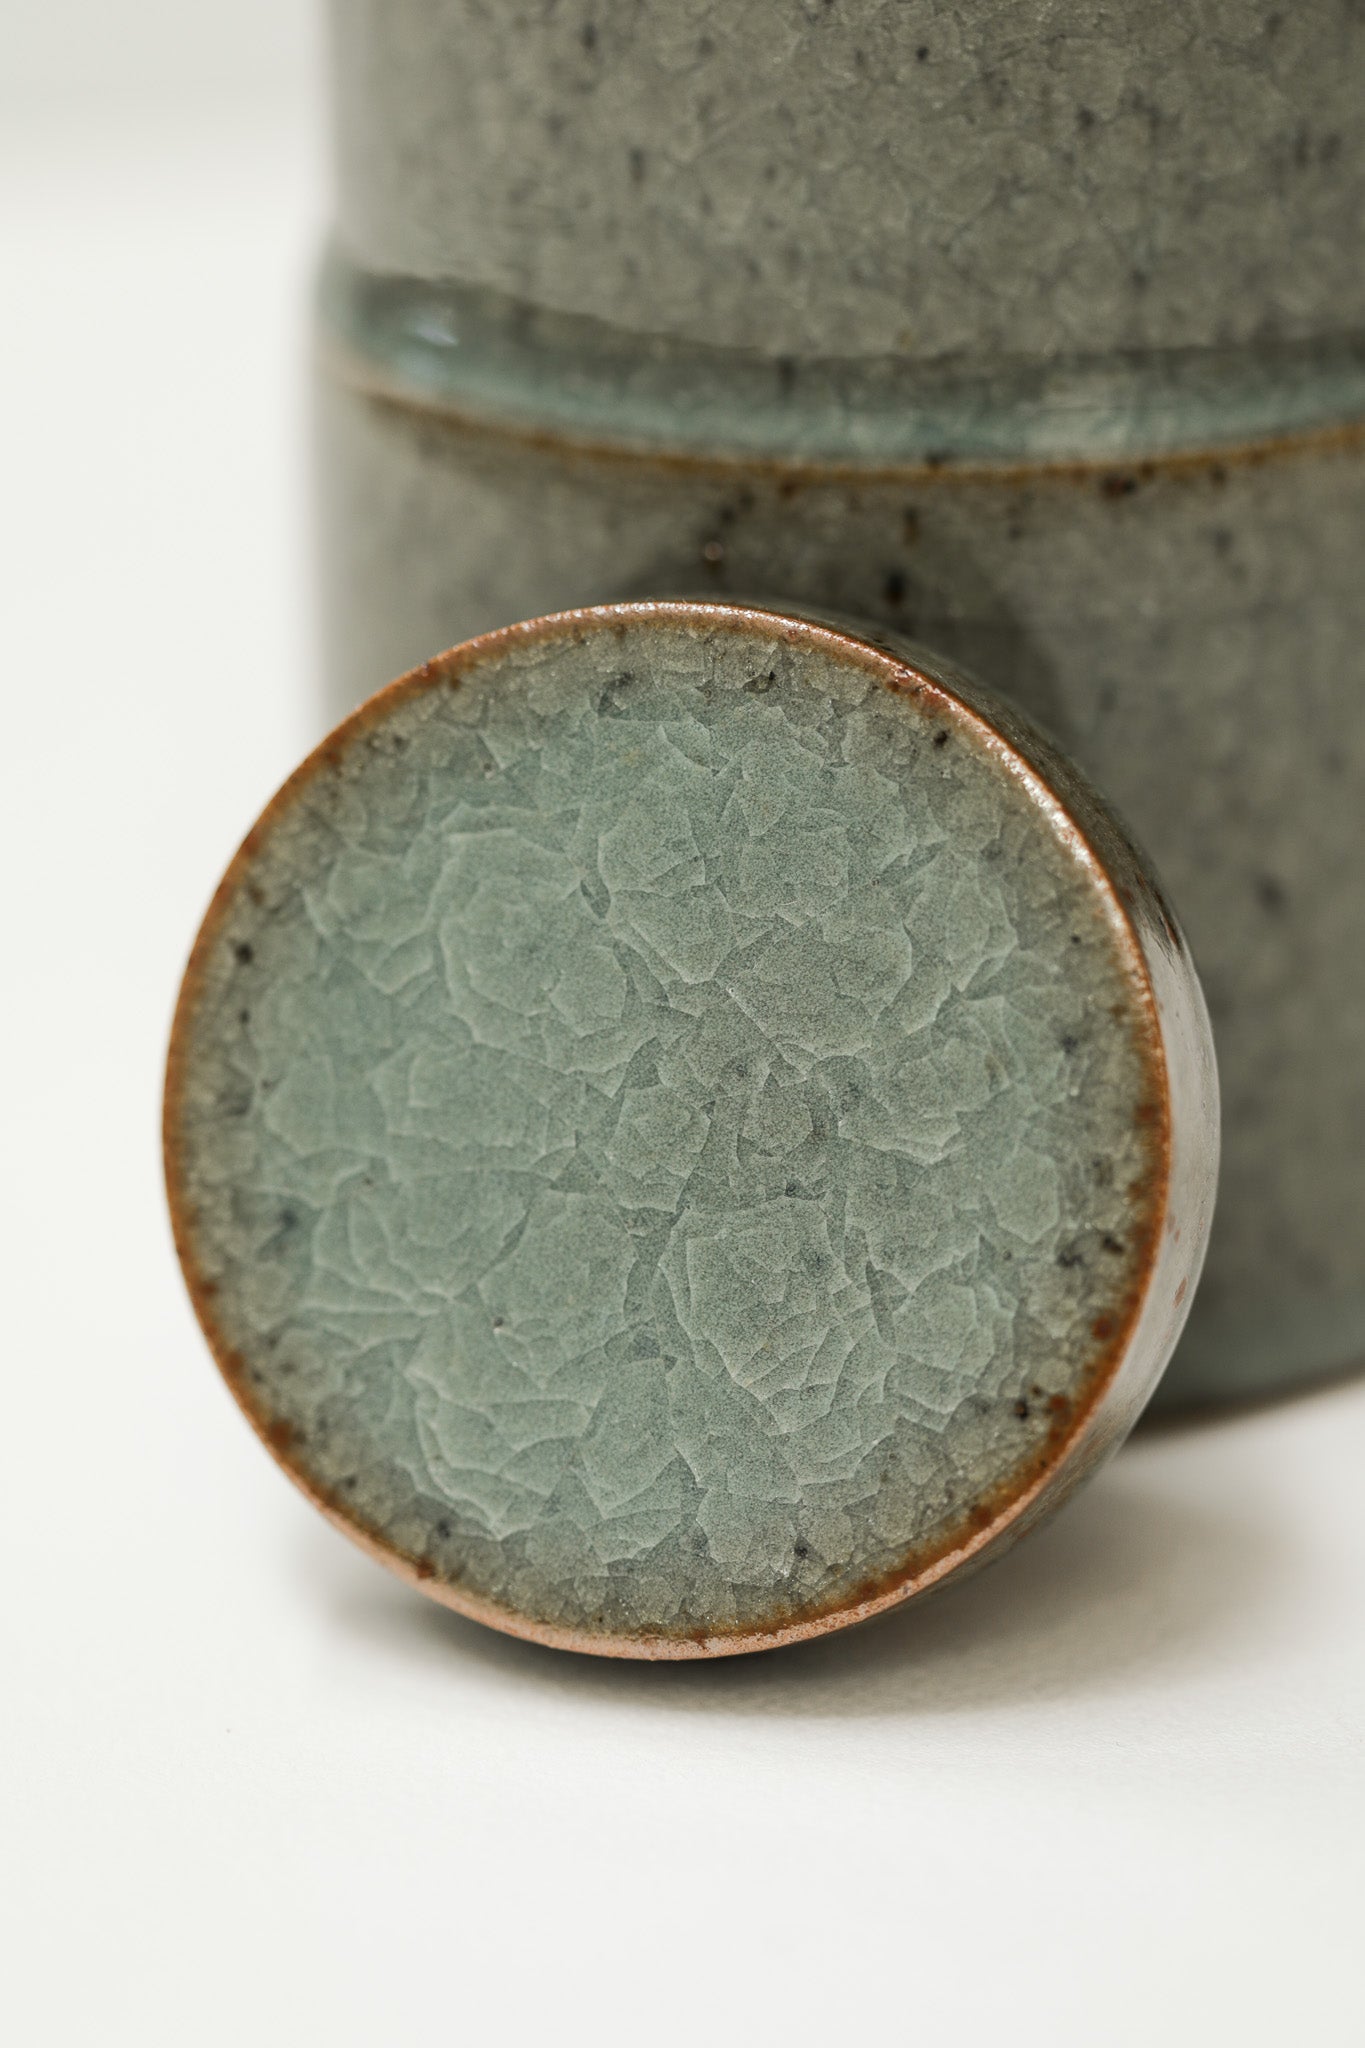 Florian Gadsby: Medium Stepped Lidded Jar